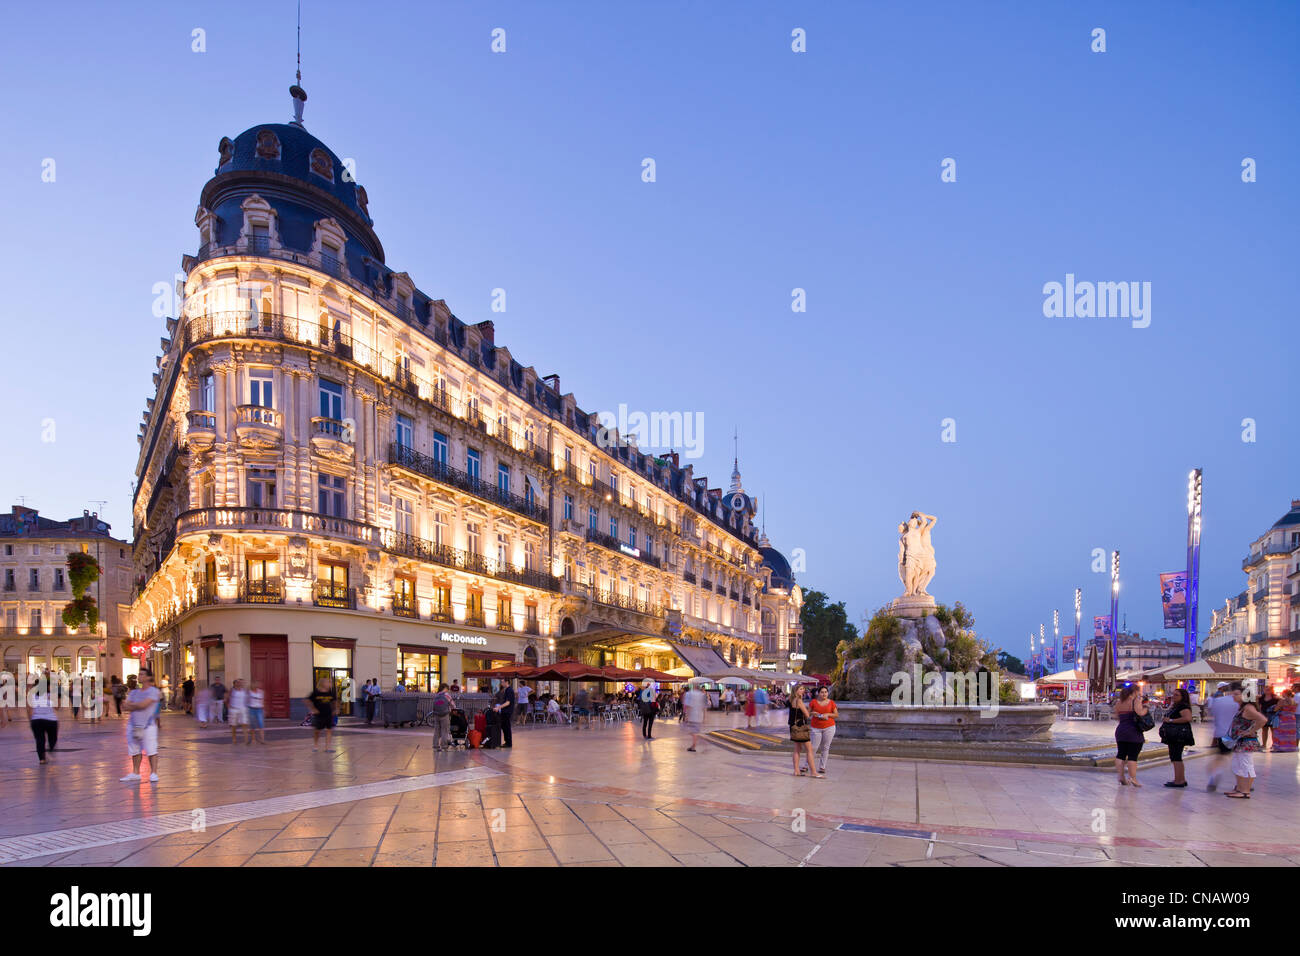 Francia, Herault, Montpellier, el centro histórico, el Ecusson, Place de la comedie (Plaza de la comedia), el edificio llamado la profunda Foto de stock